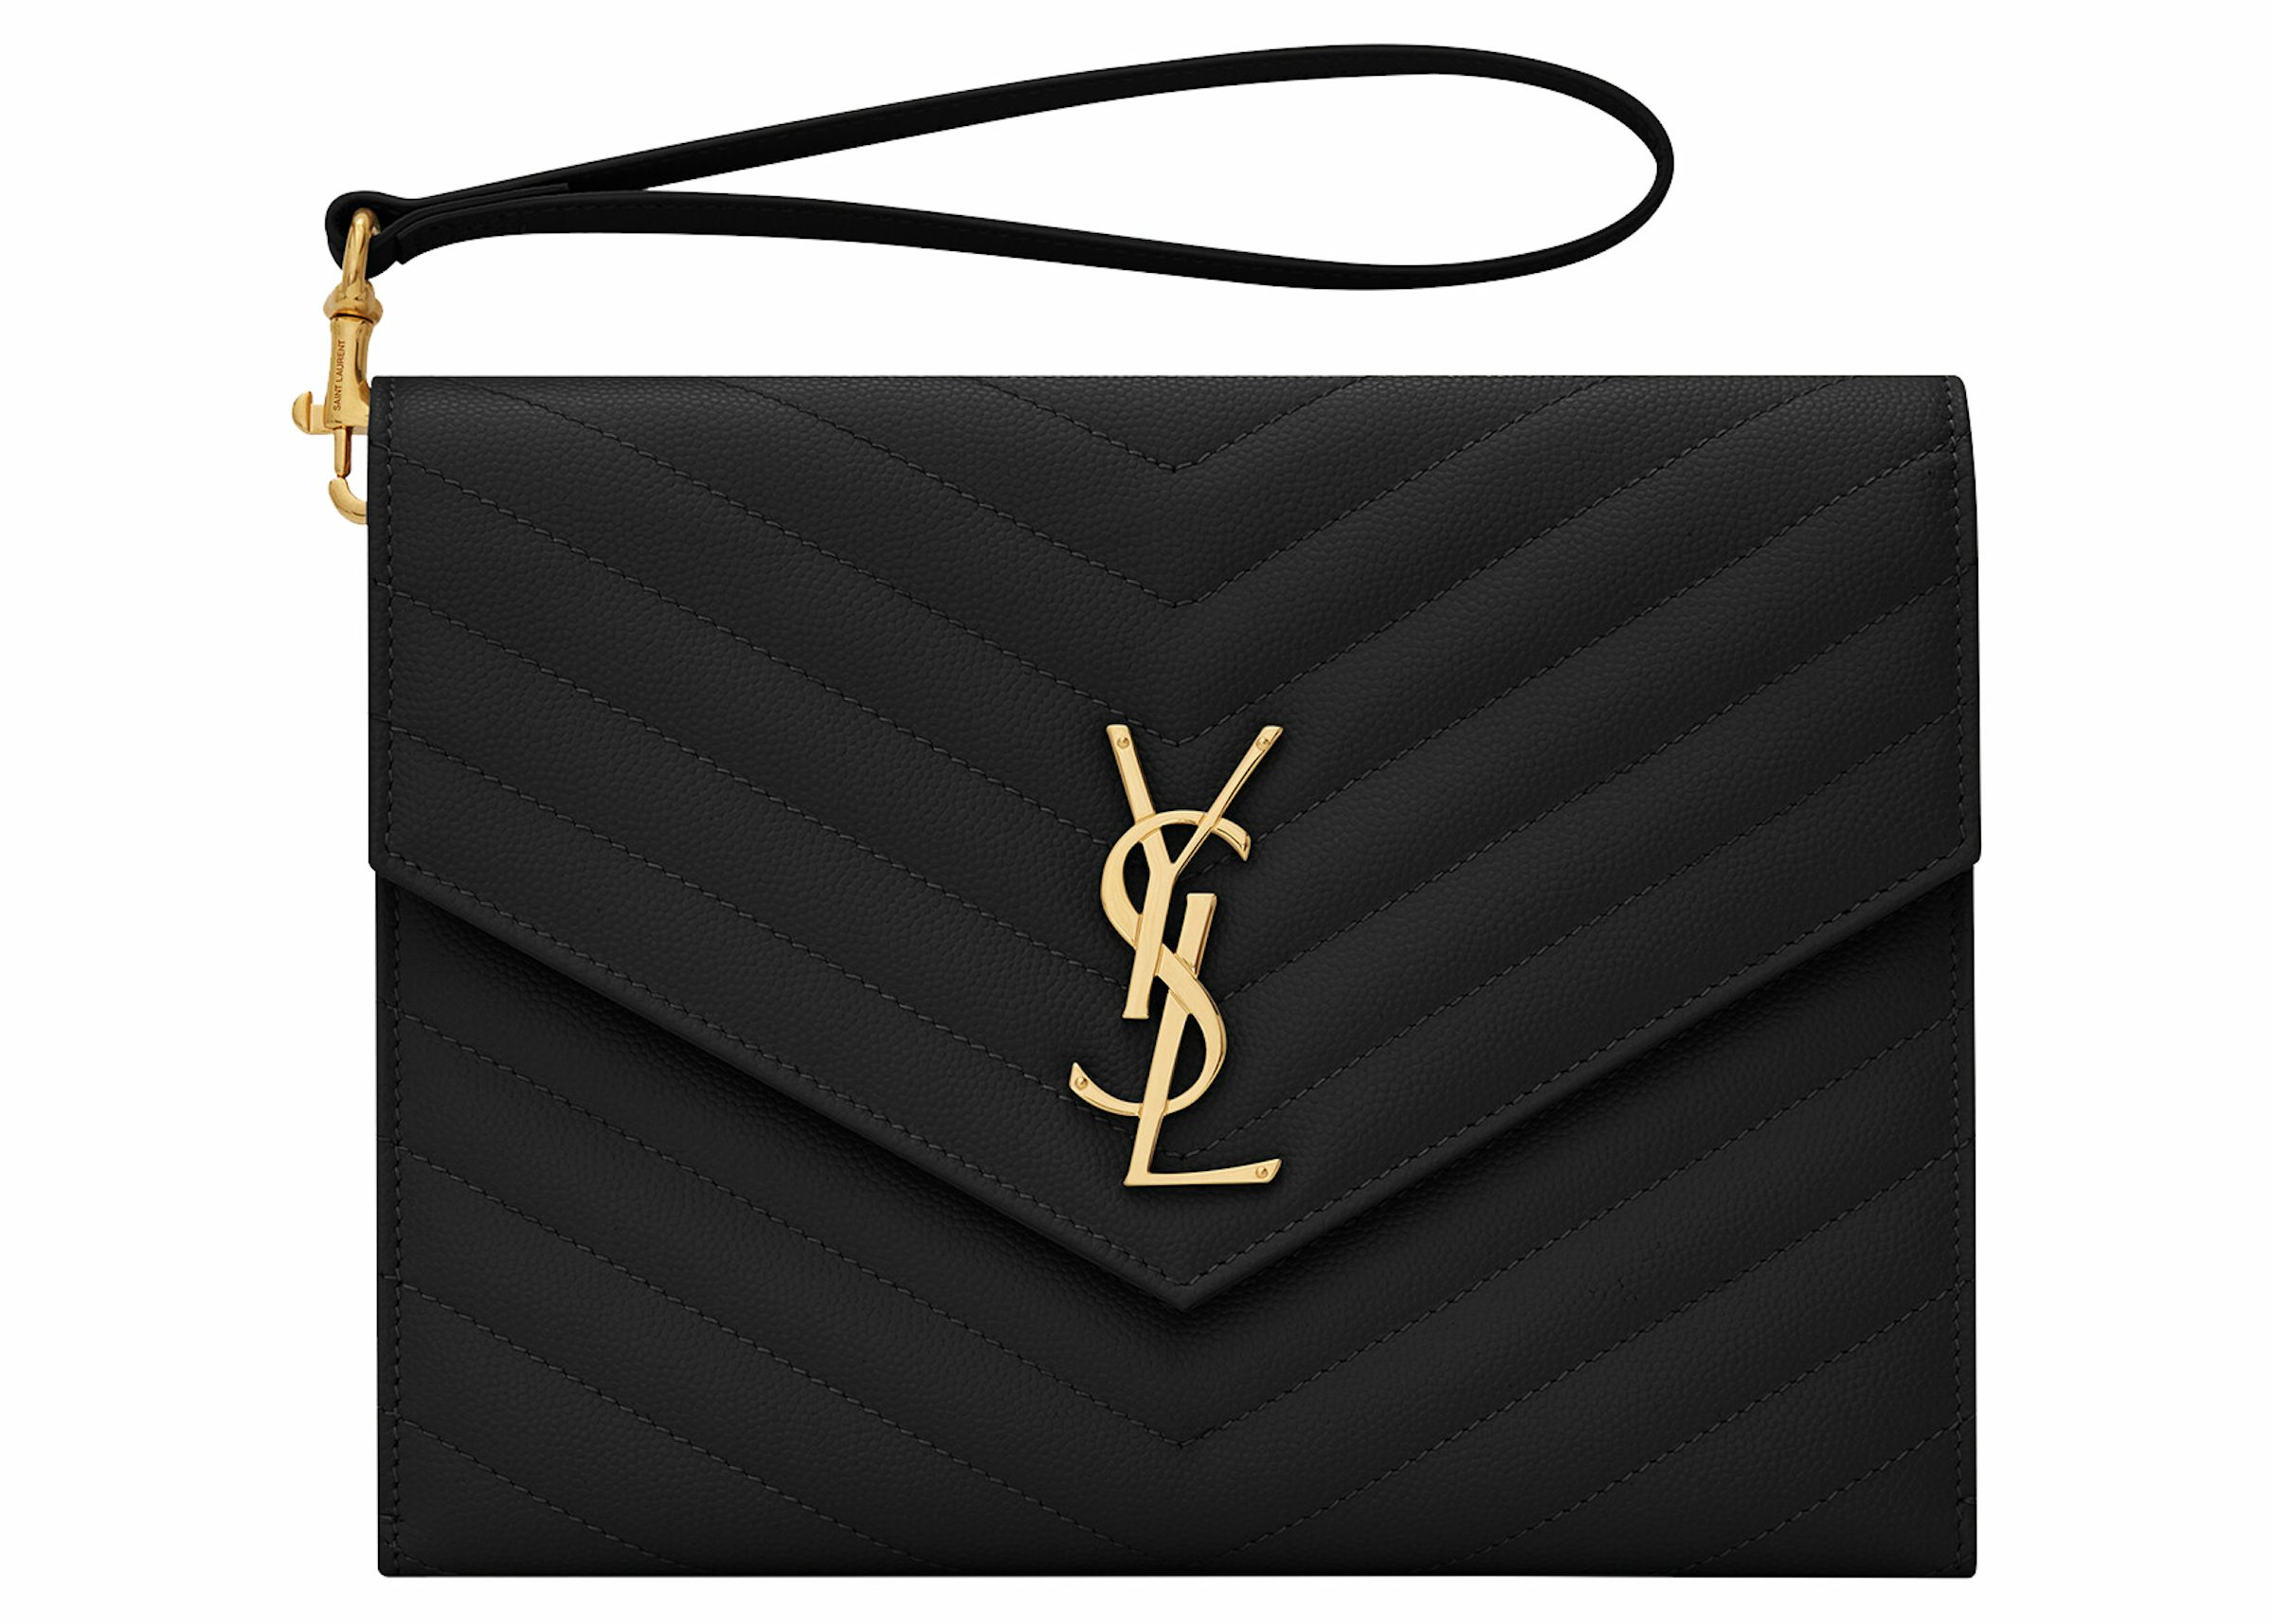 Saint Laurent Ysl New Pouch Monogram Clutch Bag - Black